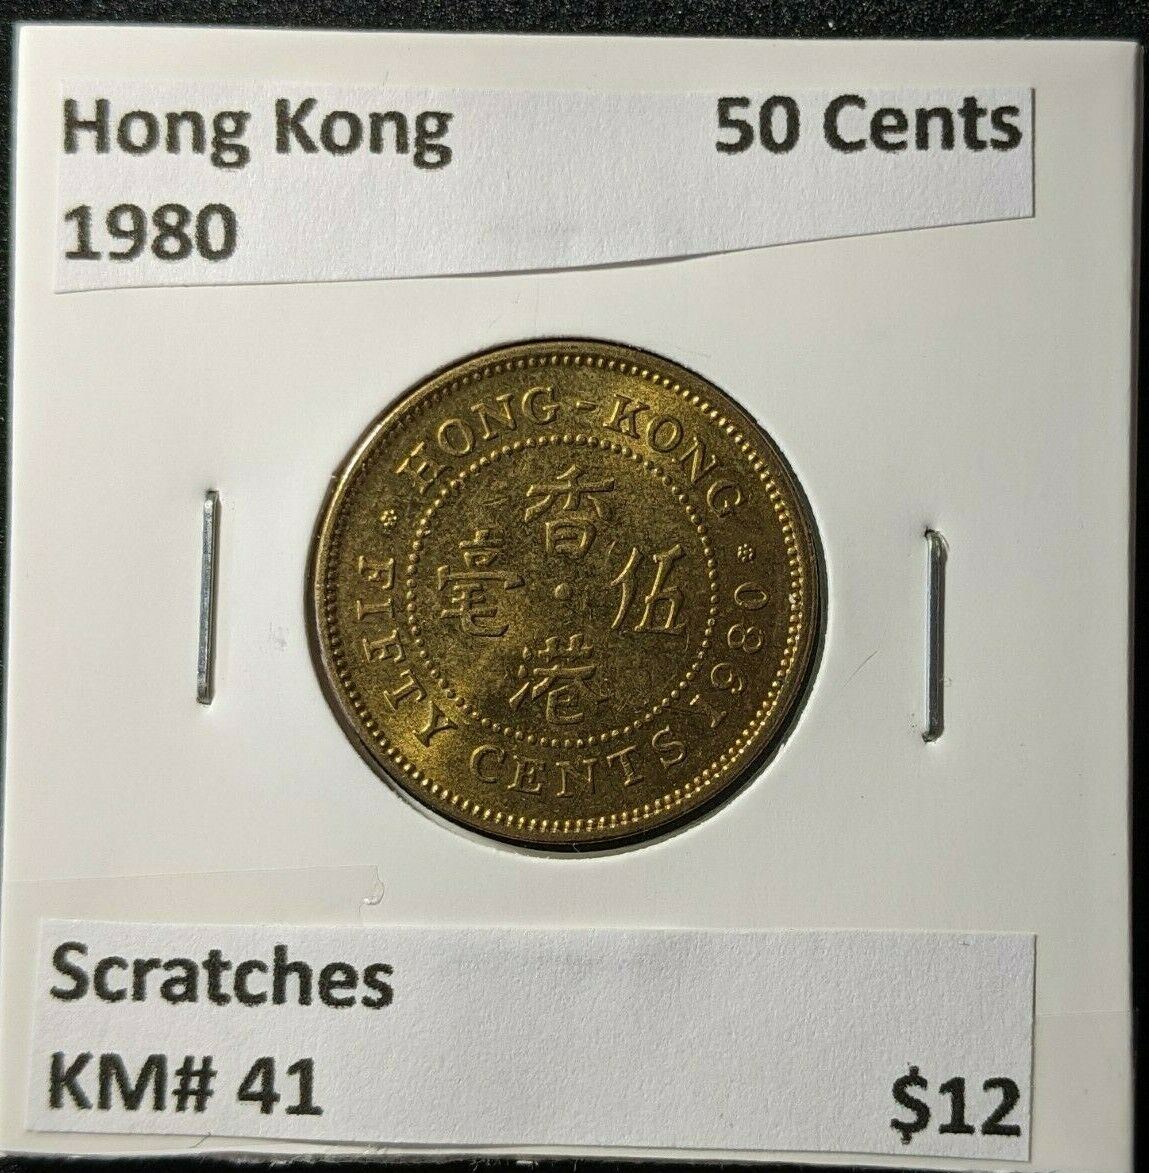 Hong Kong 1980 50 Cents KM# 41 Scratches #1416